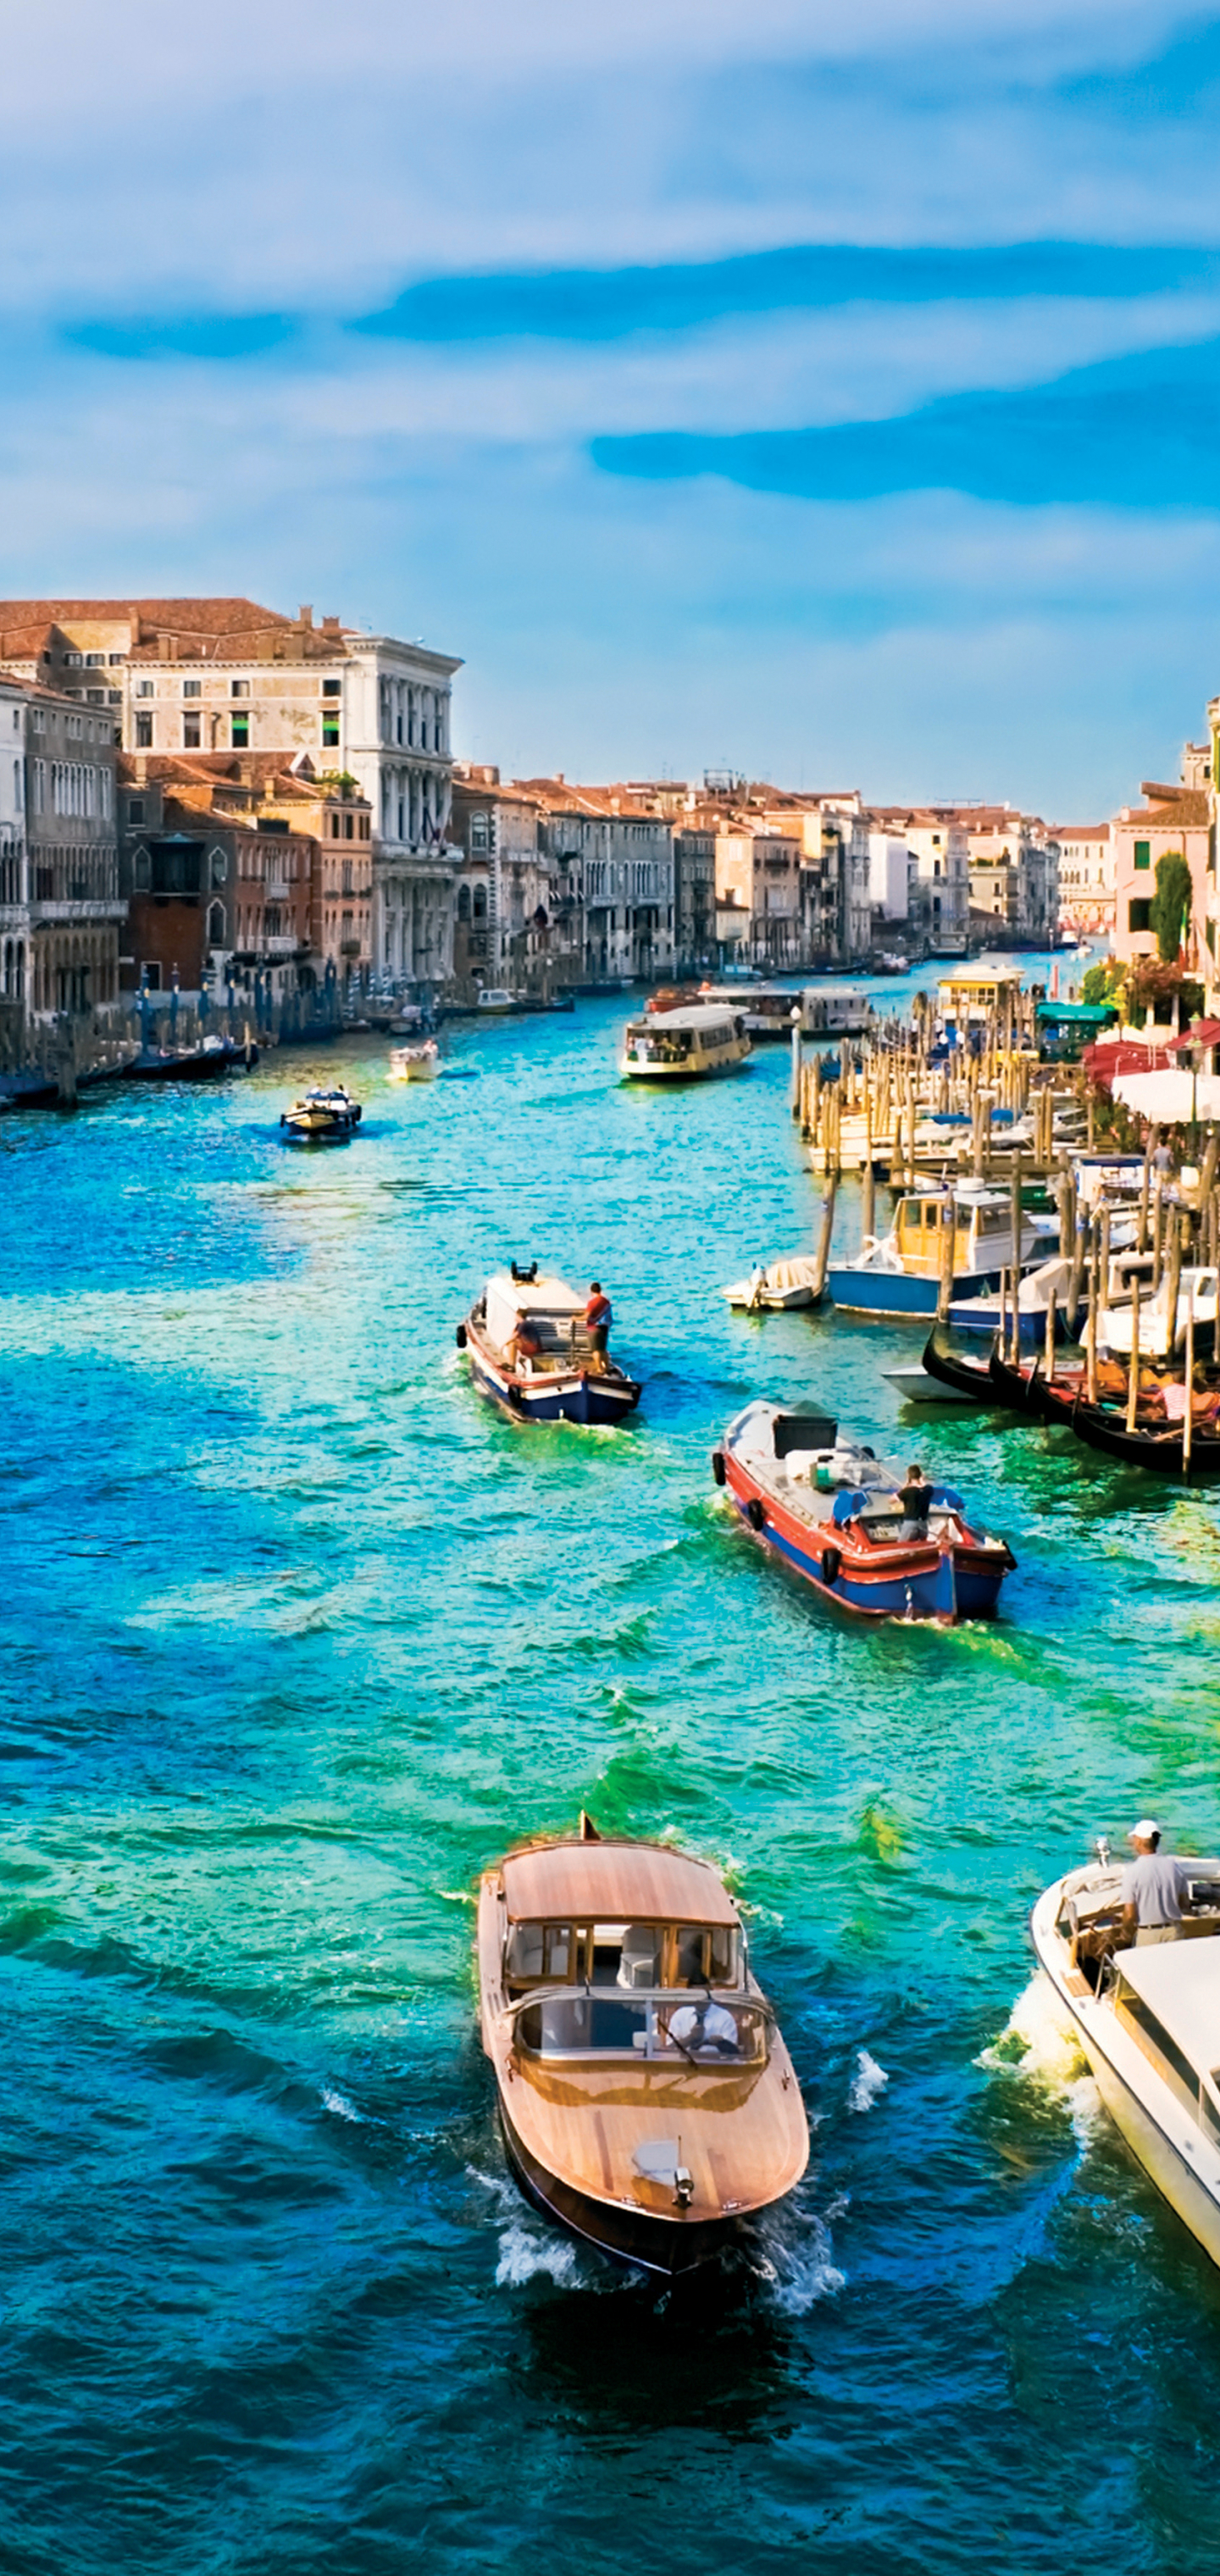 Скачать обои бесплатно Города, Италия, Венеция, Город, Лодка, Канал, Сделано Человеком, Большой Канал картинка на рабочий стол ПК